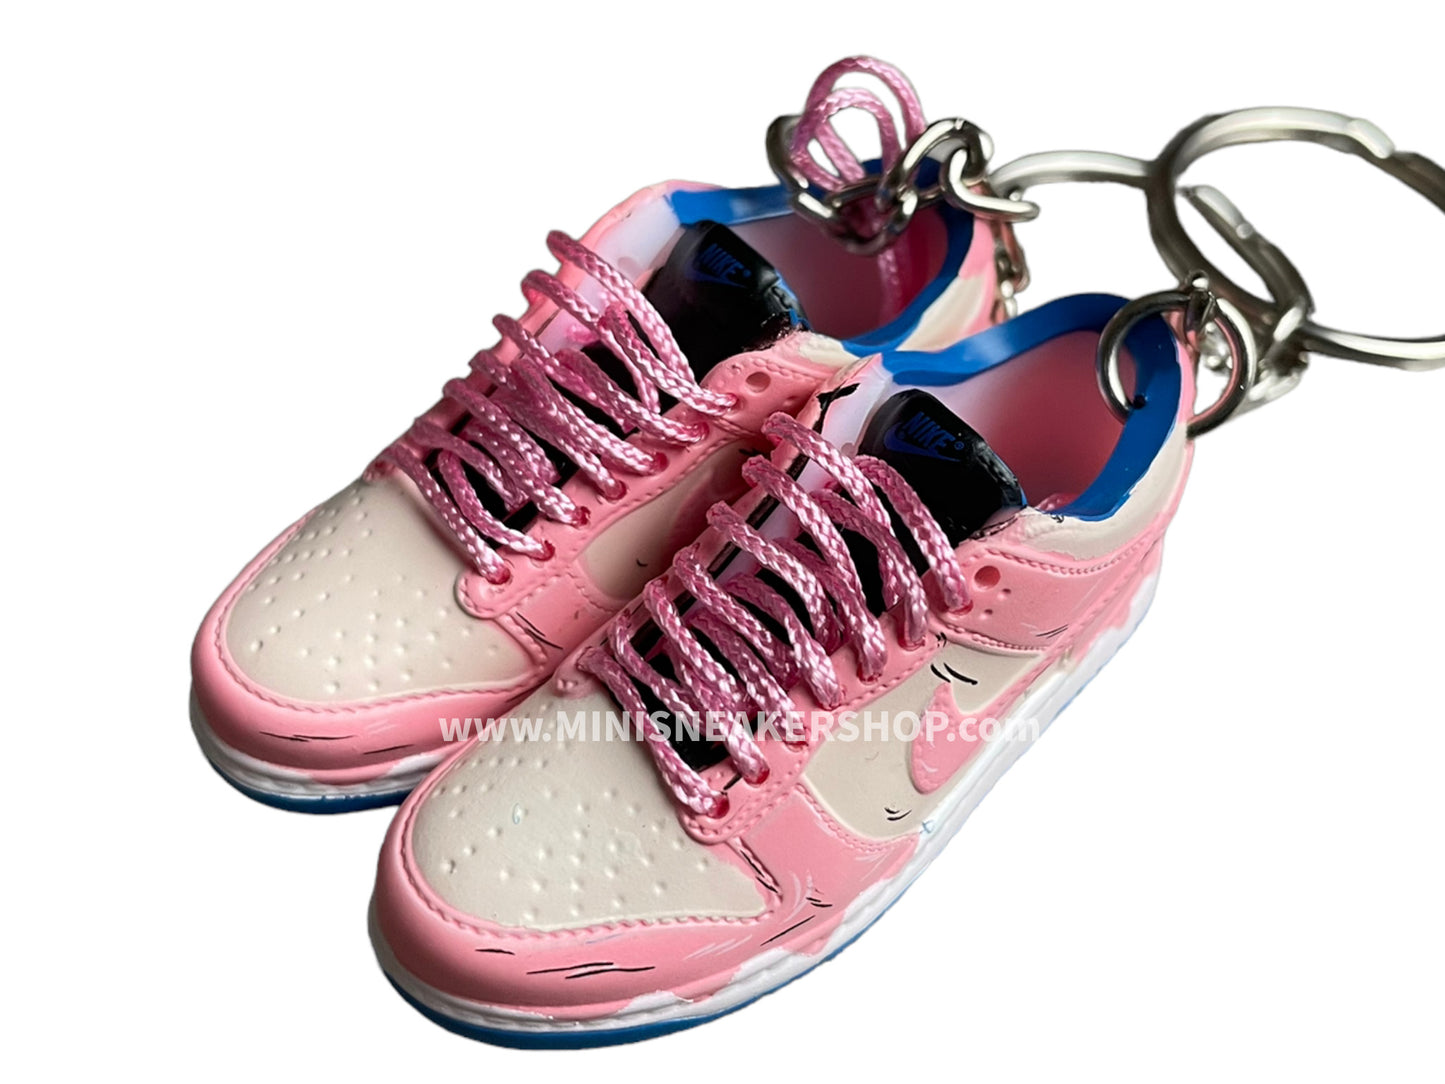 Mini sneaker keychain 3D Dunk - Kenjo concept Pink